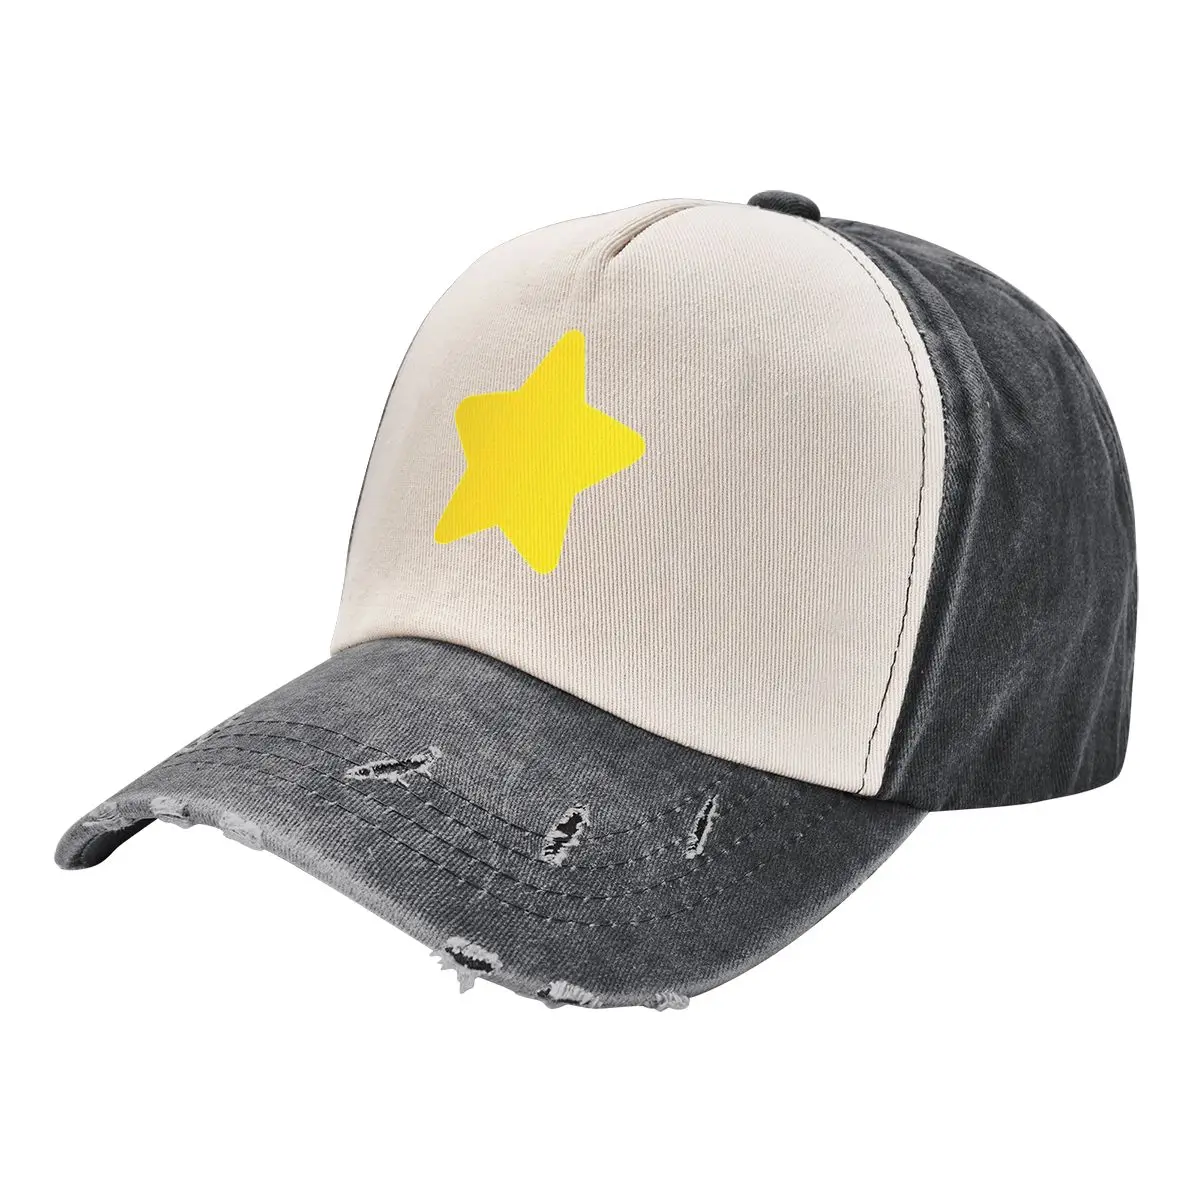 Ковбойская шляпа Steven Universe Star, шляпа элитного бренда, рыболовные кепки, кепка для гольфа, мужская женская пляжная шляпа, мужская шляпа